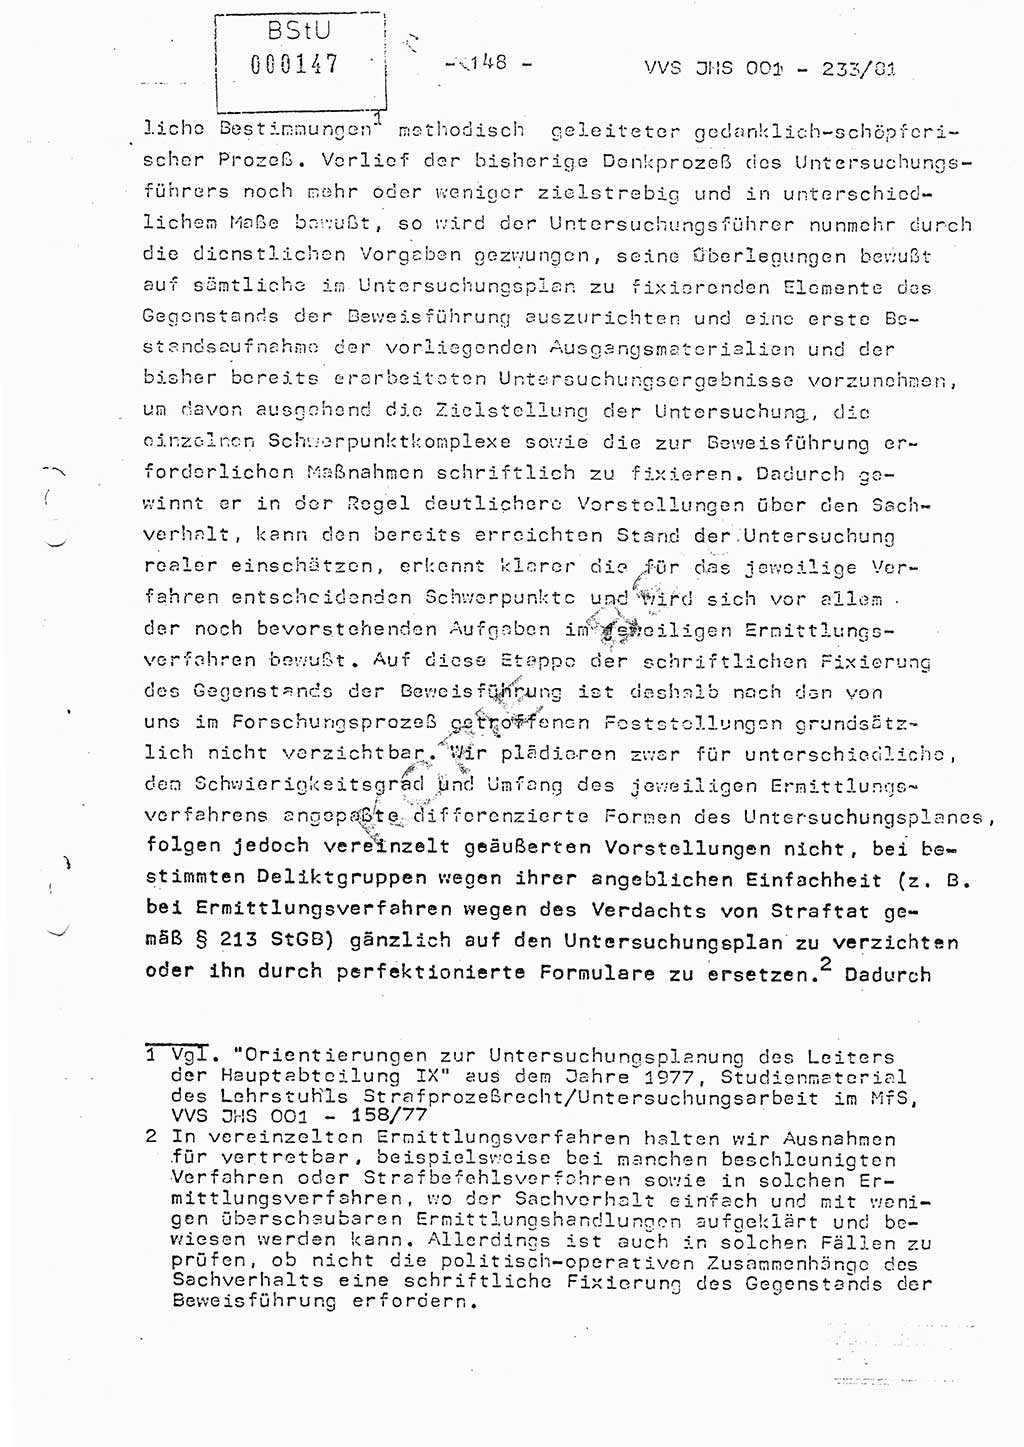 Dissertation Oberstleutnant Horst Zank (JHS), Oberstleutnant Dr. Karl-Heinz Knoblauch (JHS), Oberstleutnant Gustav-Adolf Kowalewski (HA Ⅸ), Oberstleutnant Wolfgang Plötner (HA Ⅸ), Ministerium für Staatssicherheit (MfS) [Deutsche Demokratische Republik (DDR)], Juristische Hochschule (JHS), Vertrauliche Verschlußsache (VVS) o001-233/81, Potsdam 1981, Blatt 148 (Diss. MfS DDR JHS VVS o001-233/81 1981, Bl. 148)